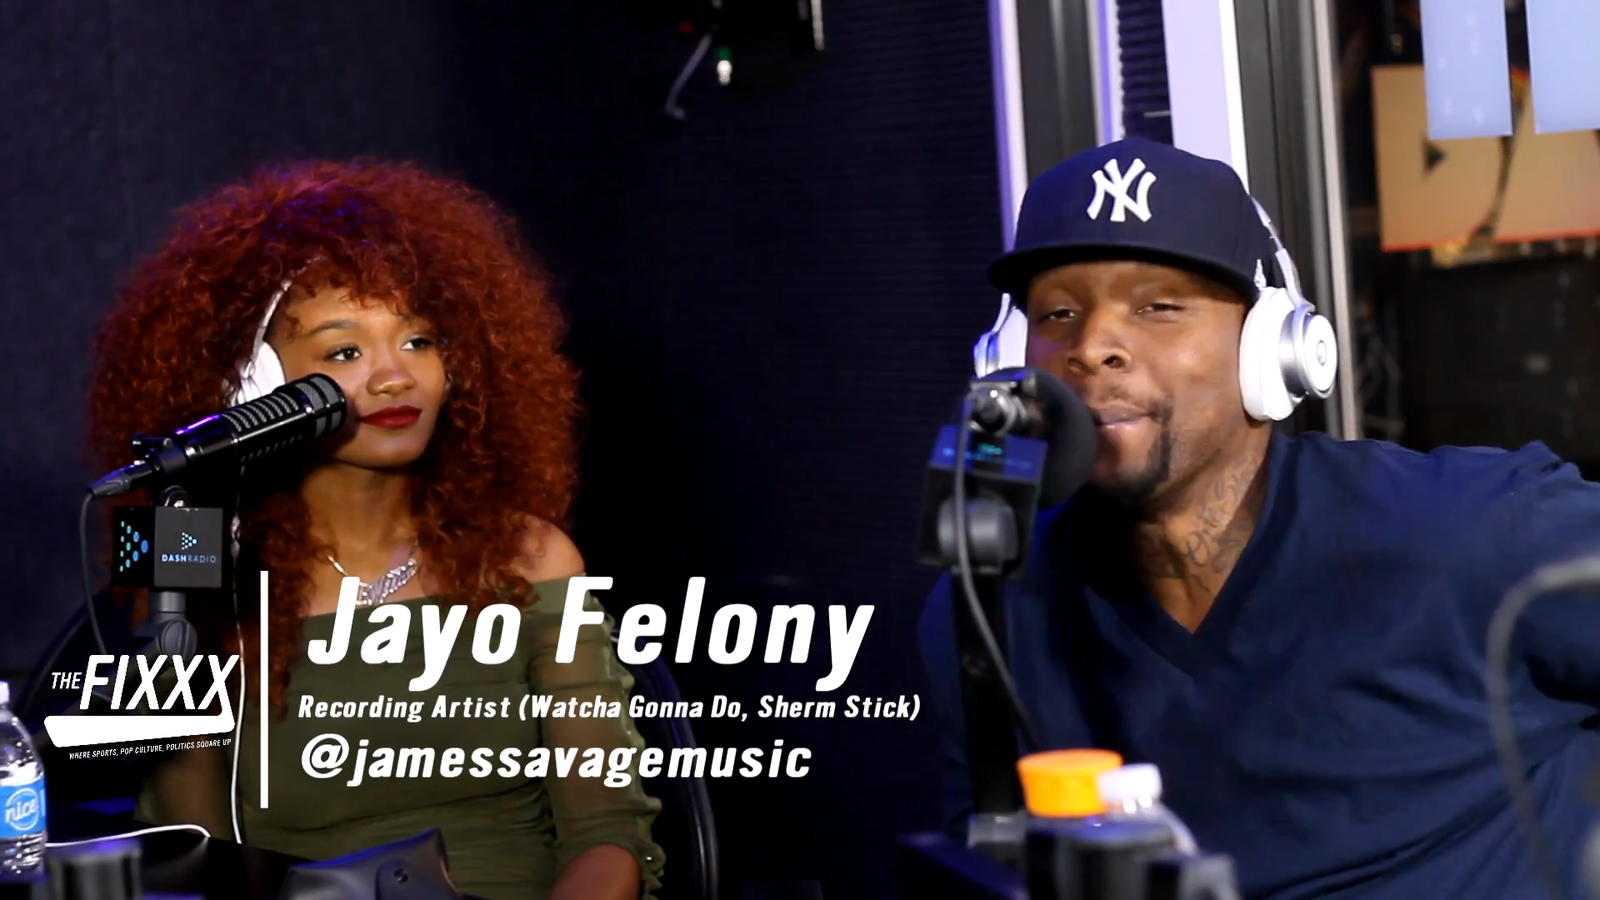 Jayo Felony on The Fixxx Audiocast